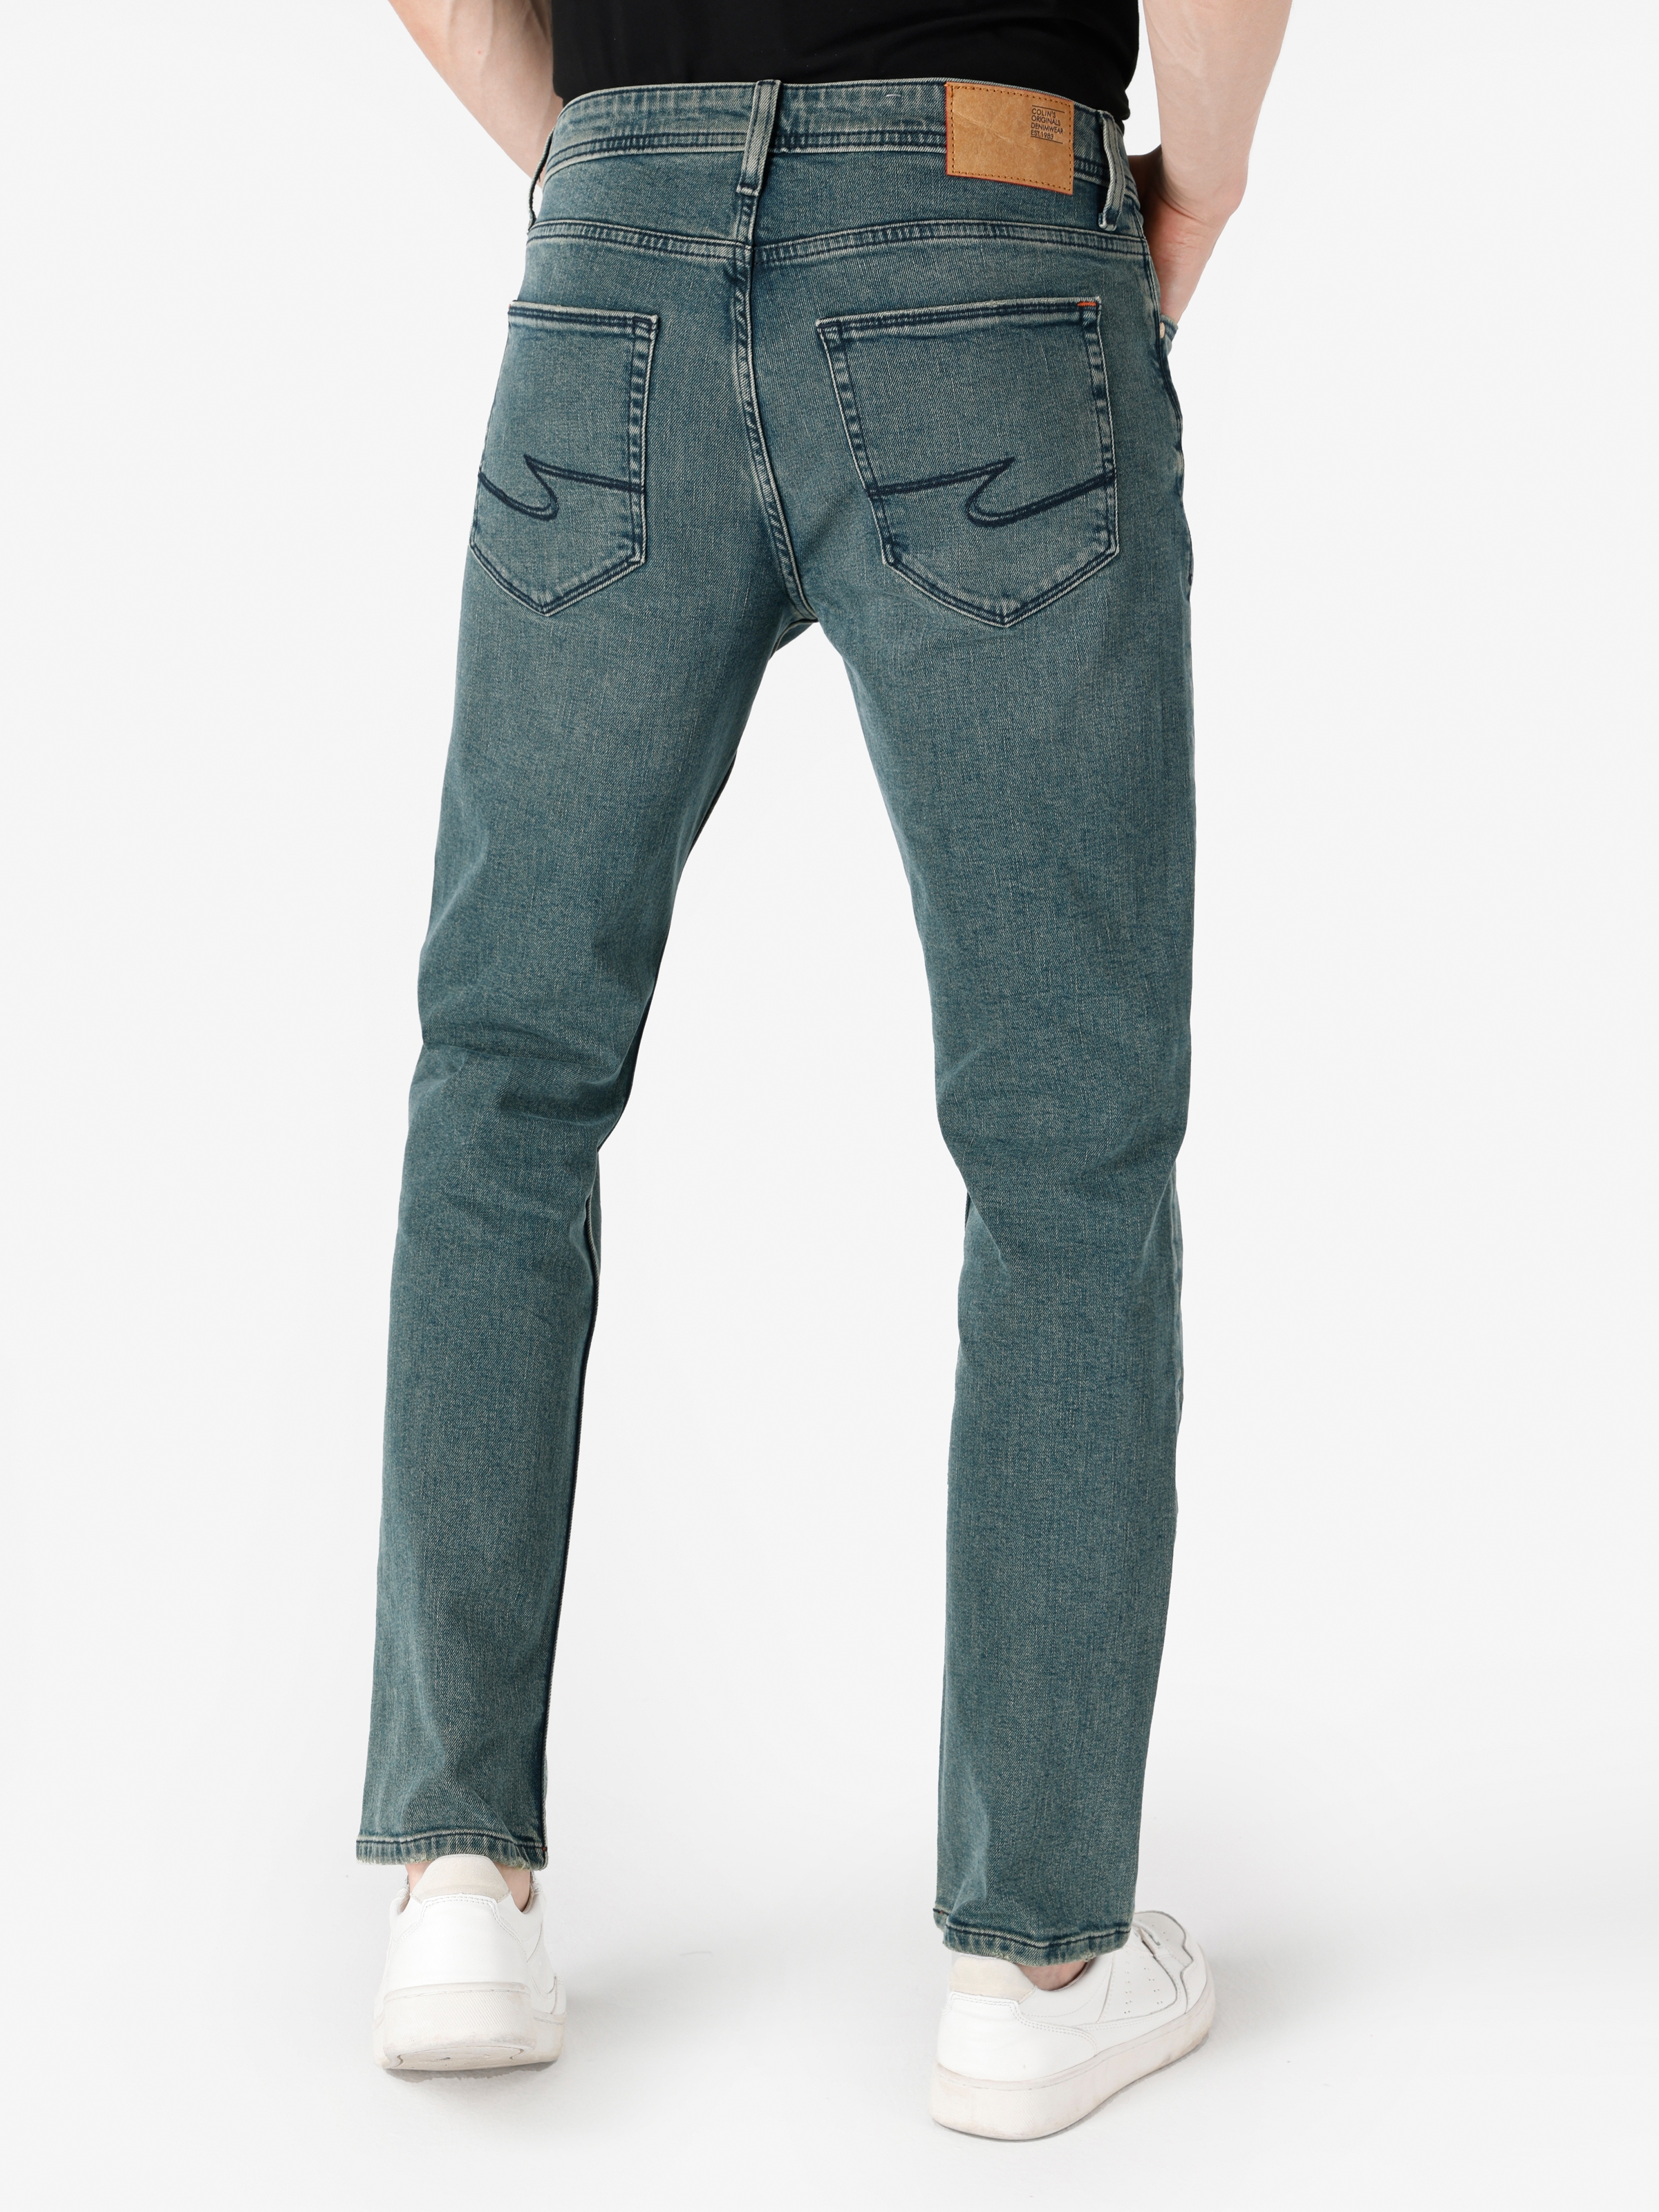 Afișați detalii pentru Pantaloni De Barbati Verde Regular Fit 045 DAVID 